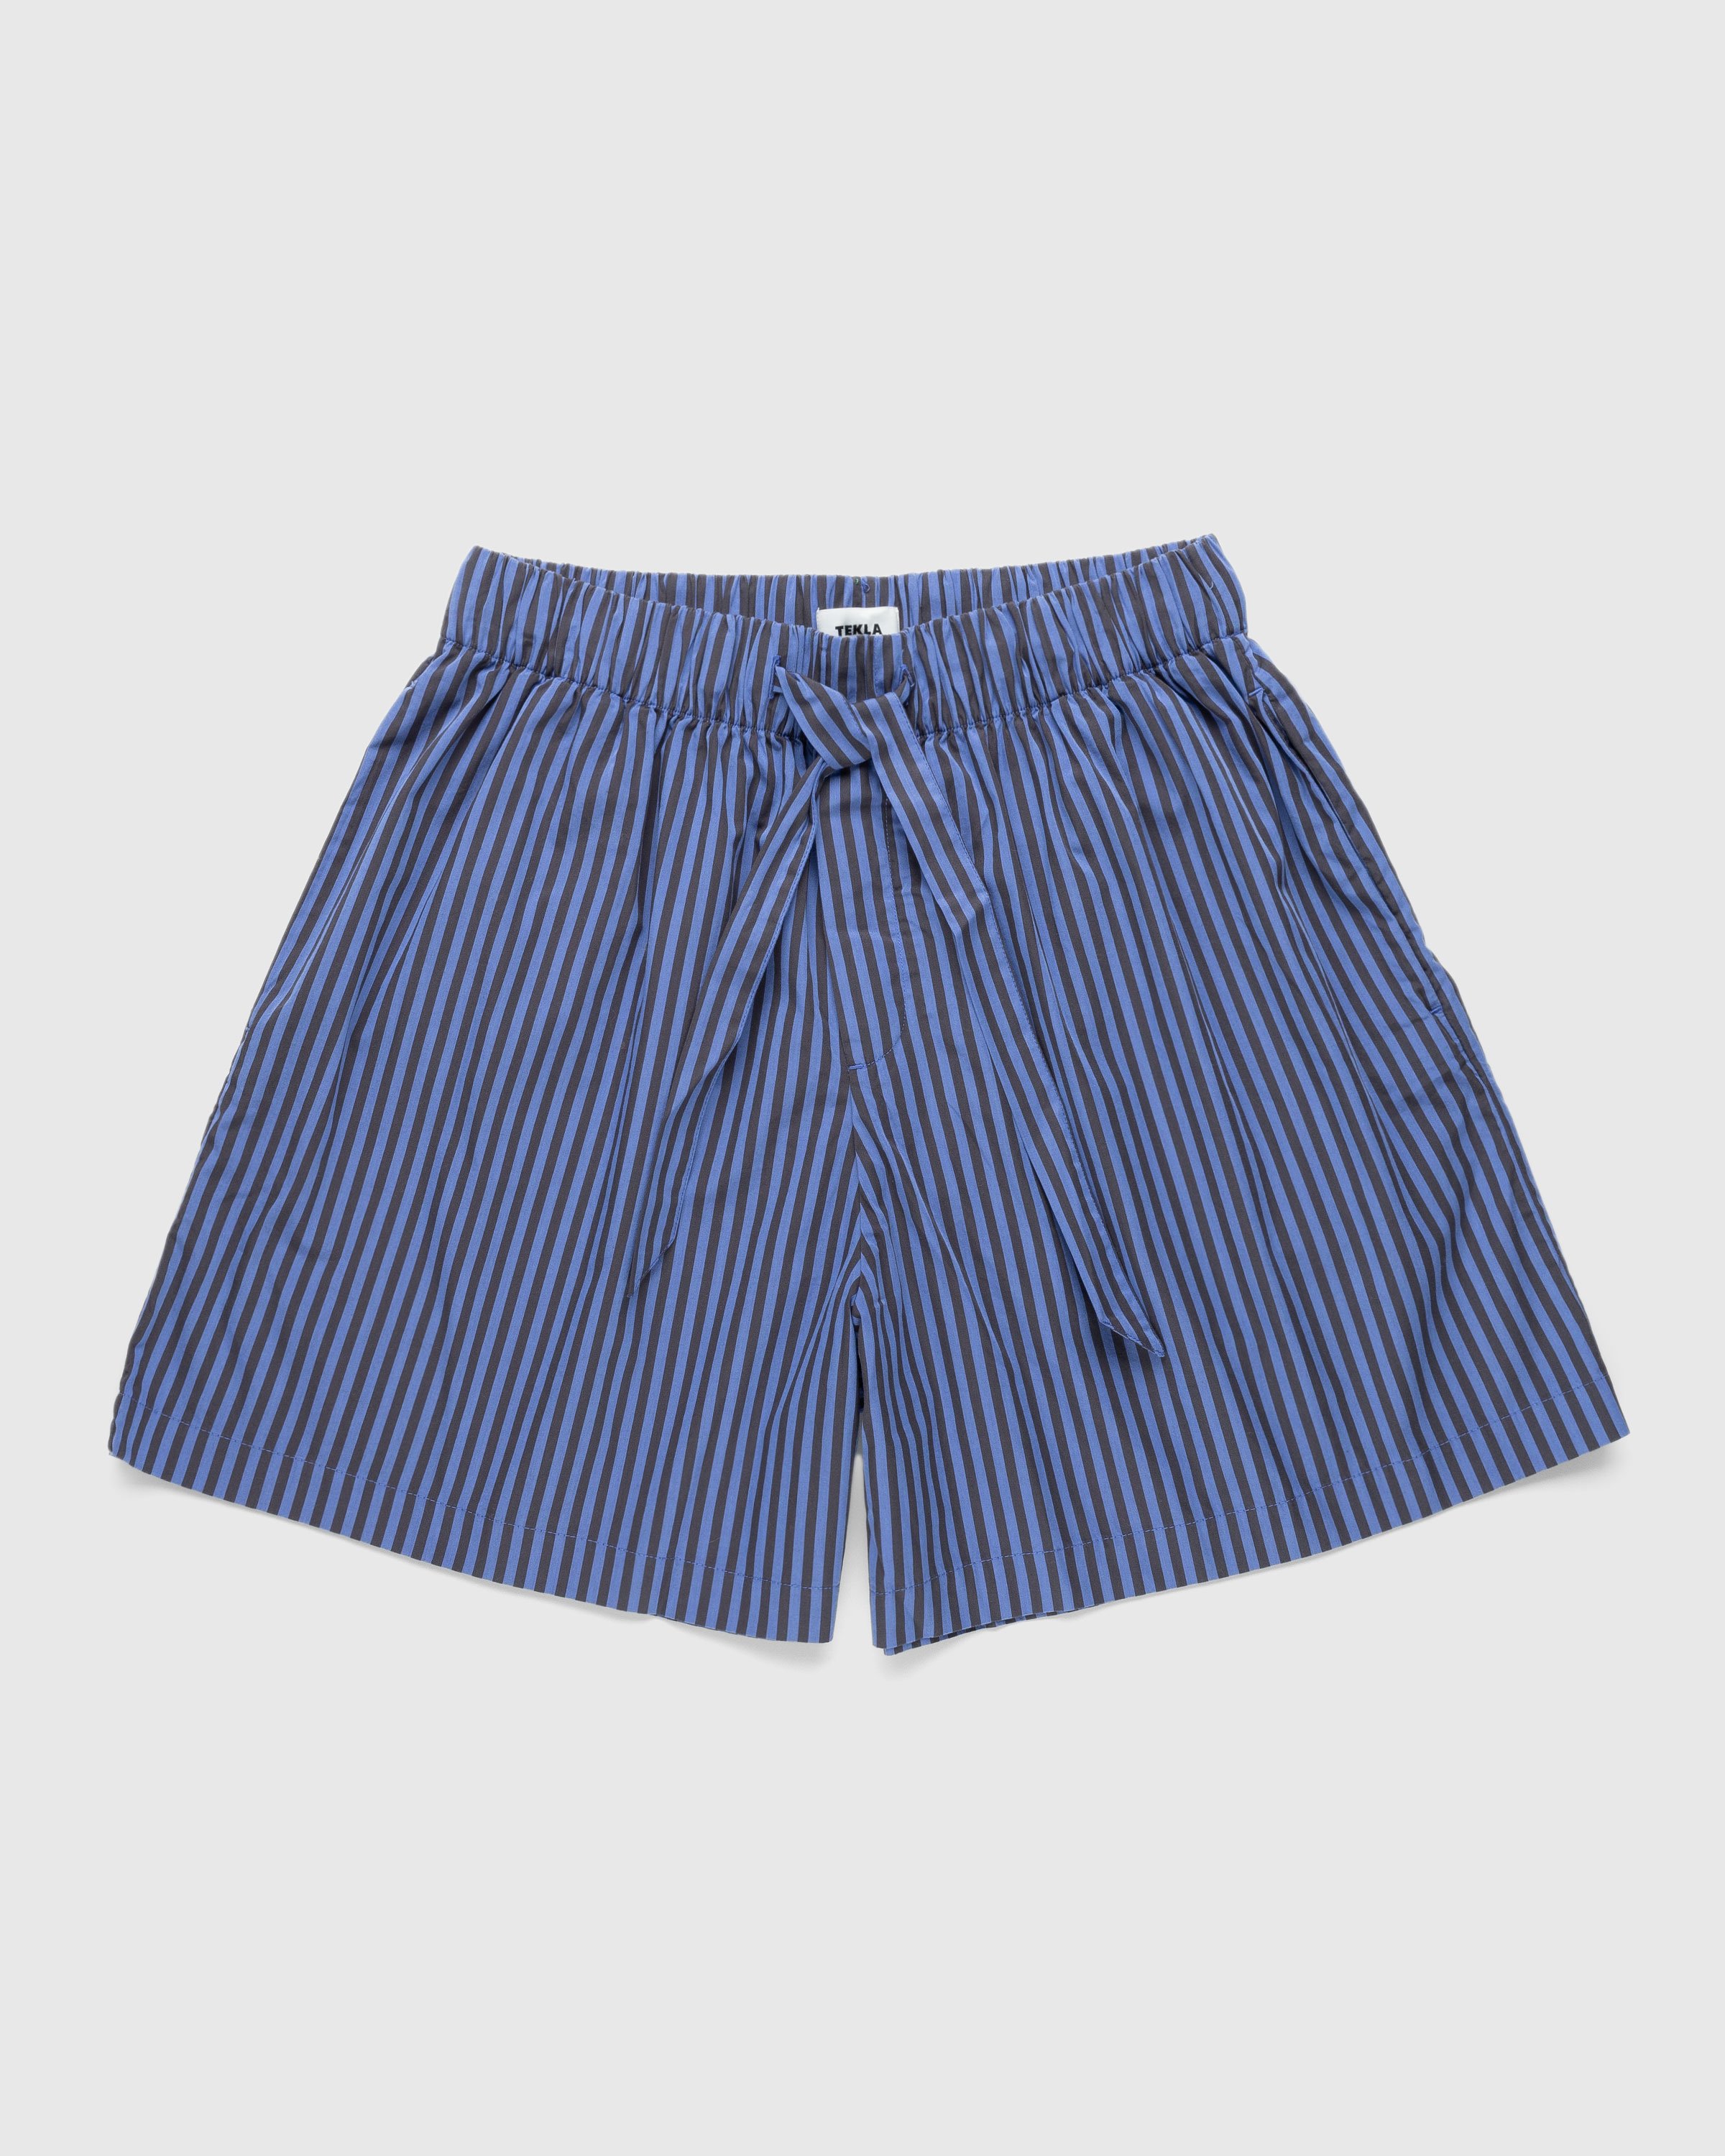 Tekla – Cotton Poplin Pyjamas Shorts Verneuil Stripes | Highsnobiety Shop